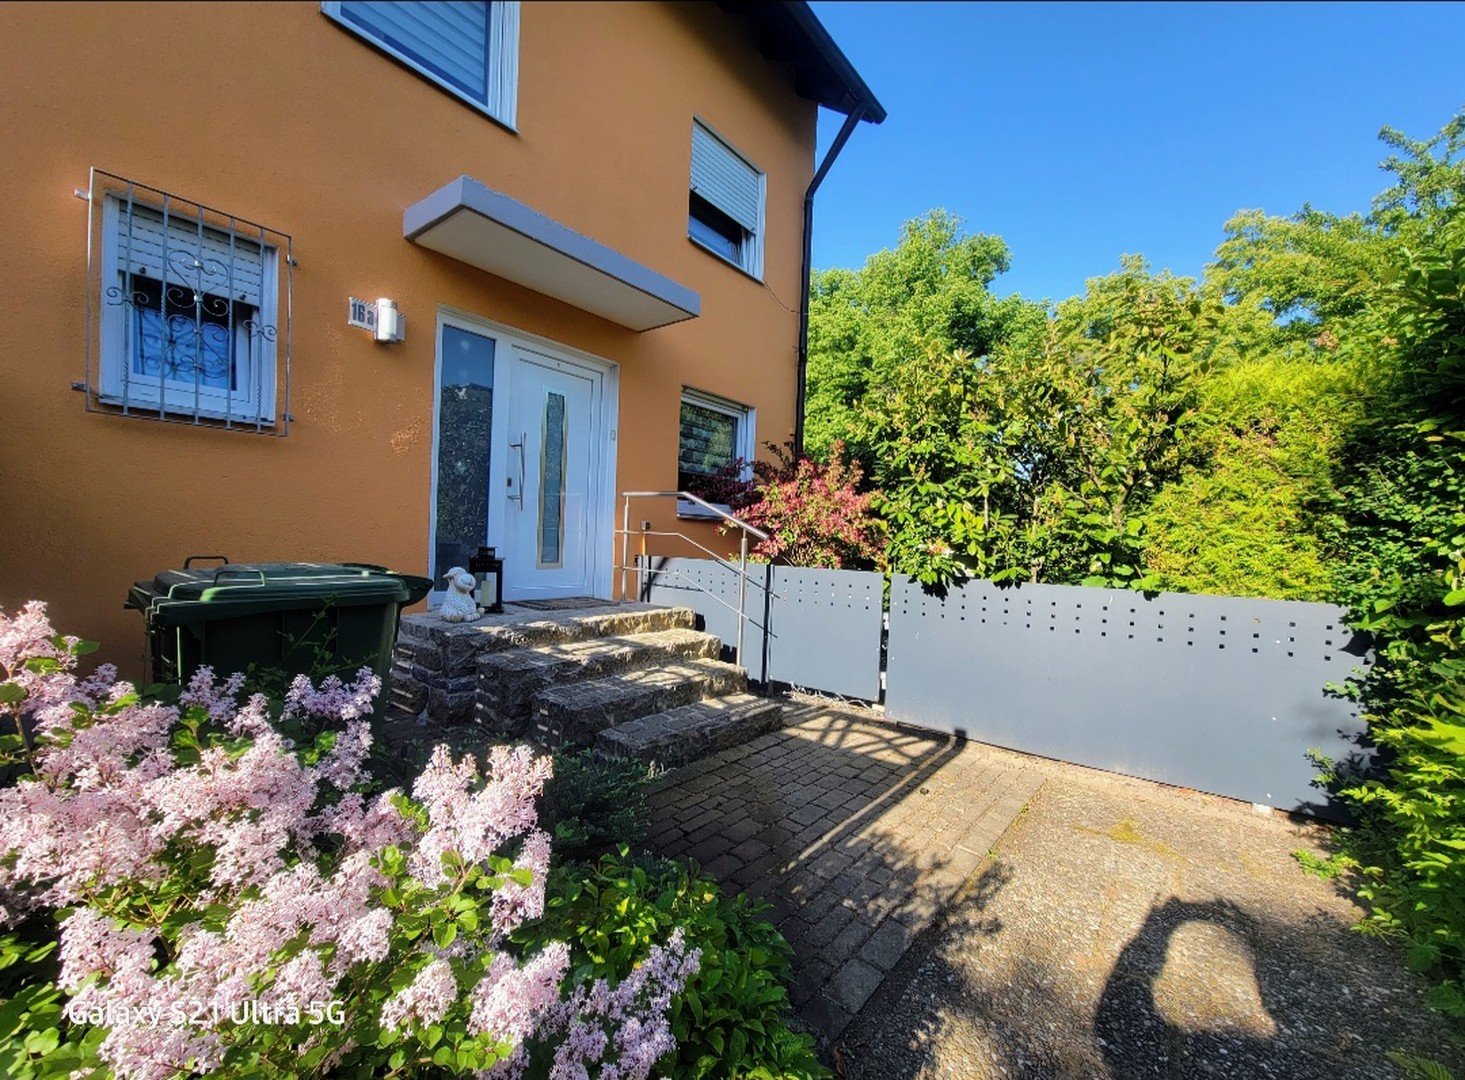 Doppelhaushälfte in Bestlage von Ansbach / Hennenbach mit Garage u. Photovoltaik